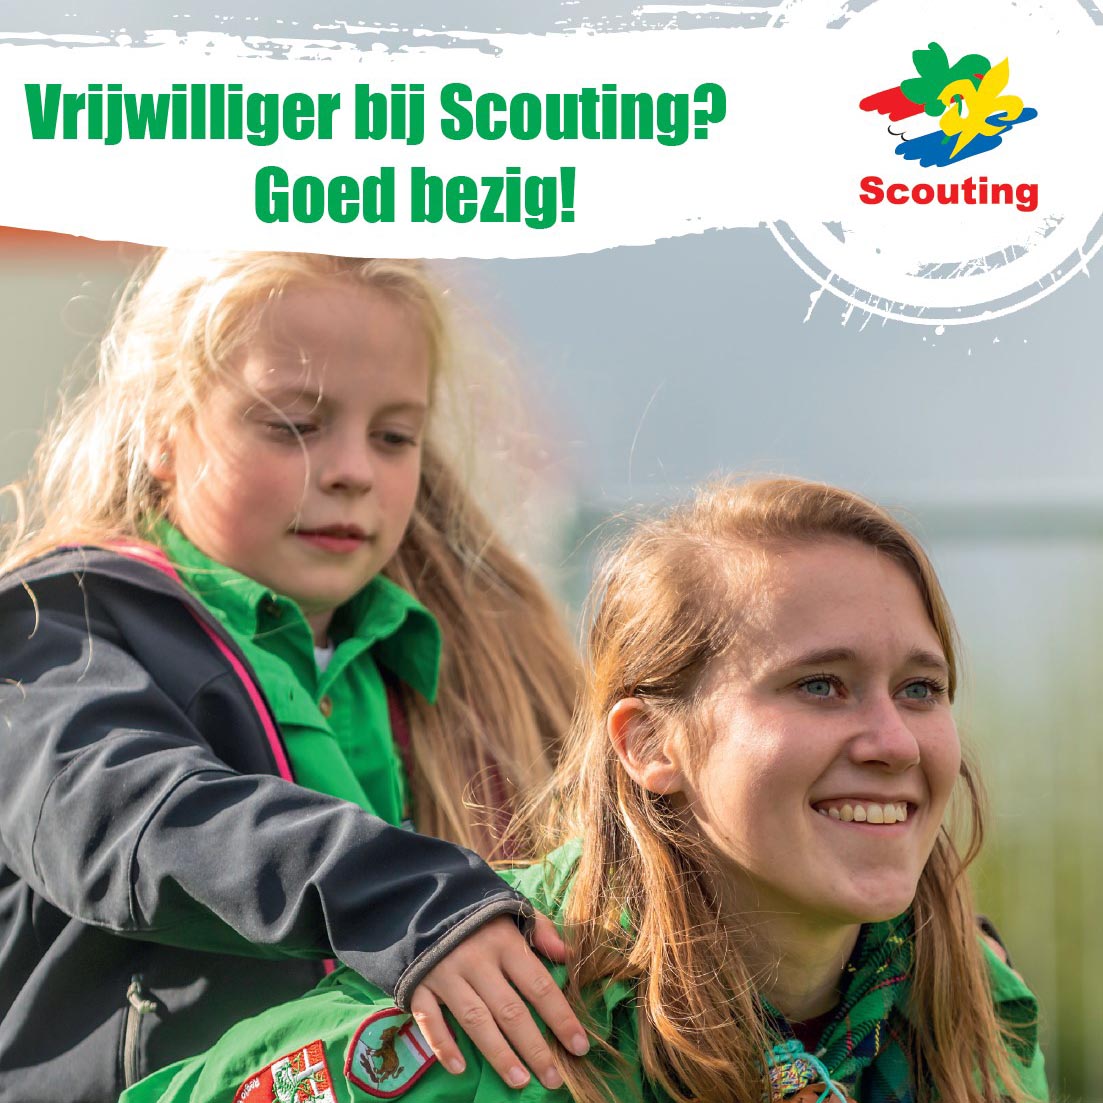 De Scouting Tono-groep Schiedam is erg trots op haar vrijwilligers